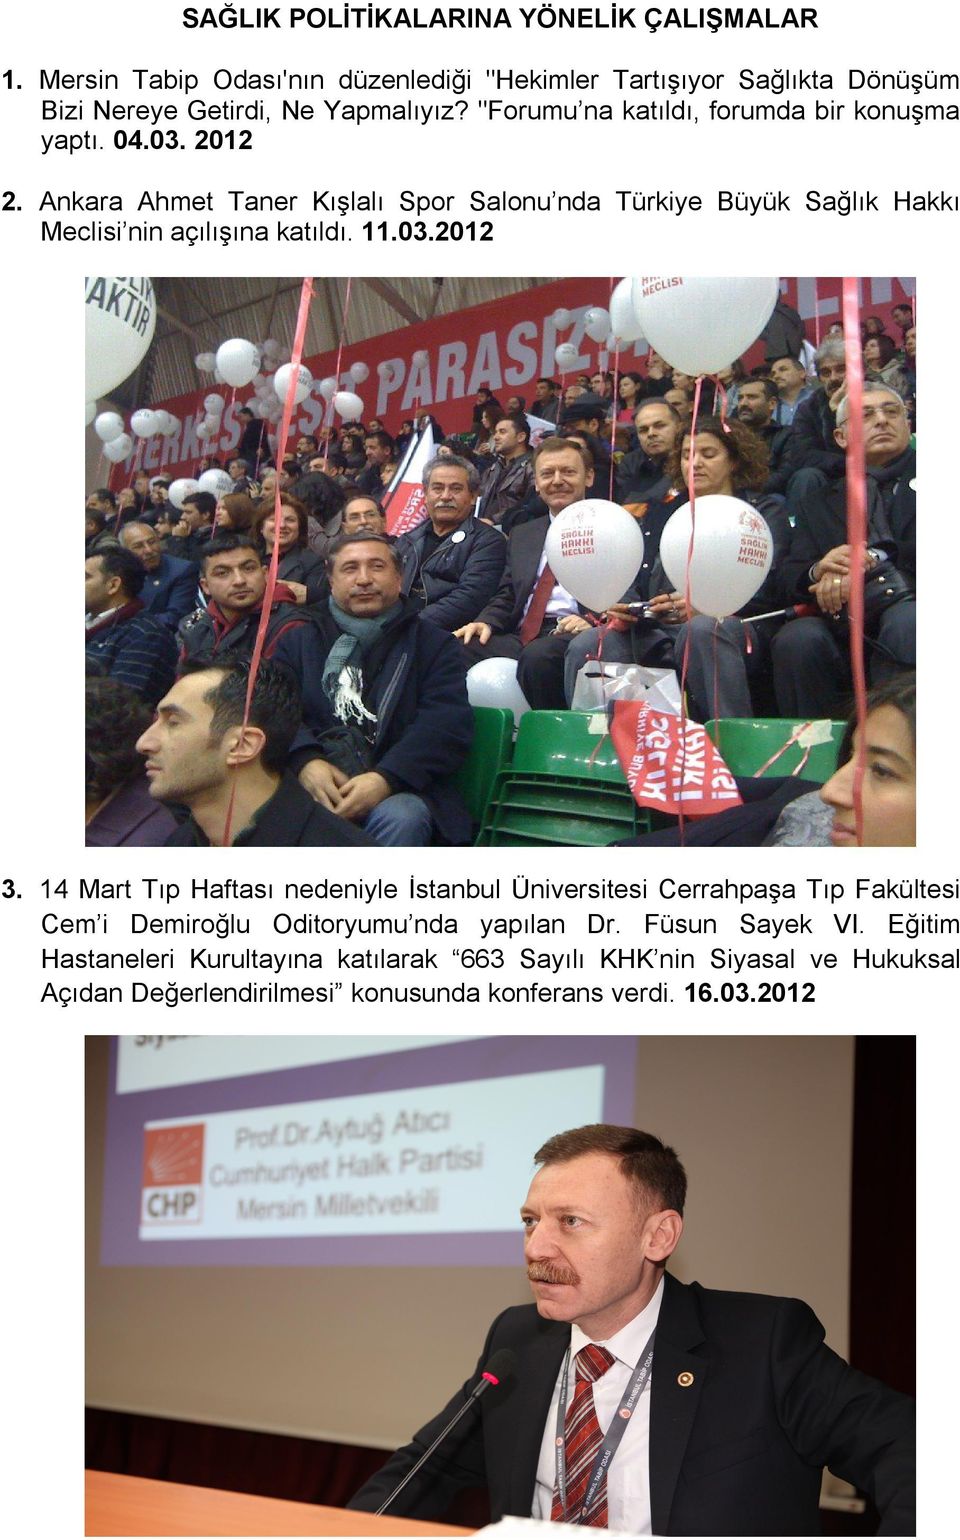 Ankara Ahmet Taner Kışlalı Spor Salonu nda Türkiye Büyük Sağlık Hakkı Meclisi nin açılışına katıldı. 11.03.2012 3.